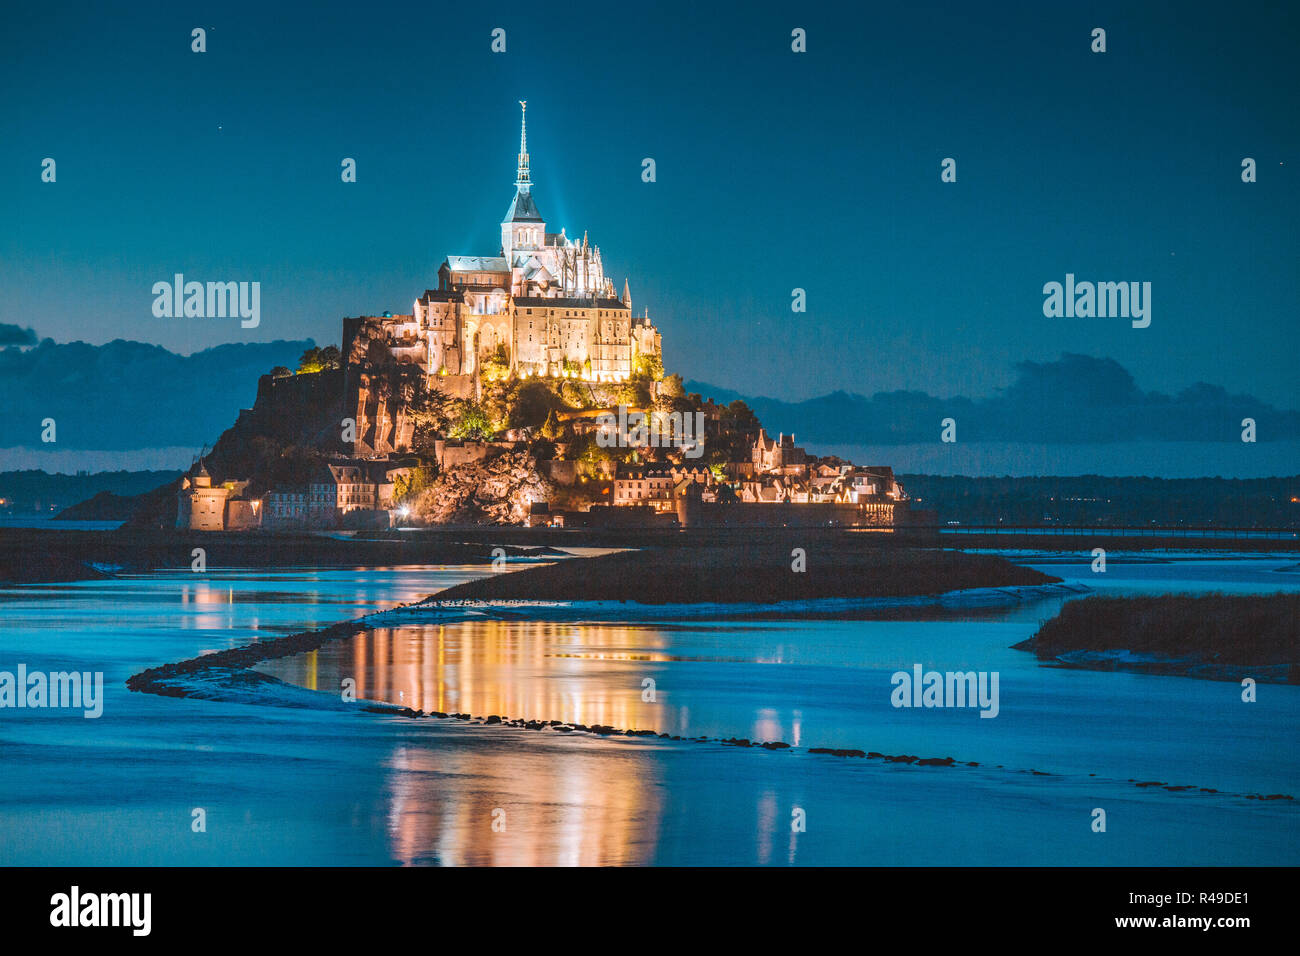 Klassische Ansicht des berühmten Le Mont Saint-Michel-Gezeiten-Insel in schöne Dämmerung während der blauen Stunde bei Dämmerung, Normandie, Nordfrankreich Stockfoto